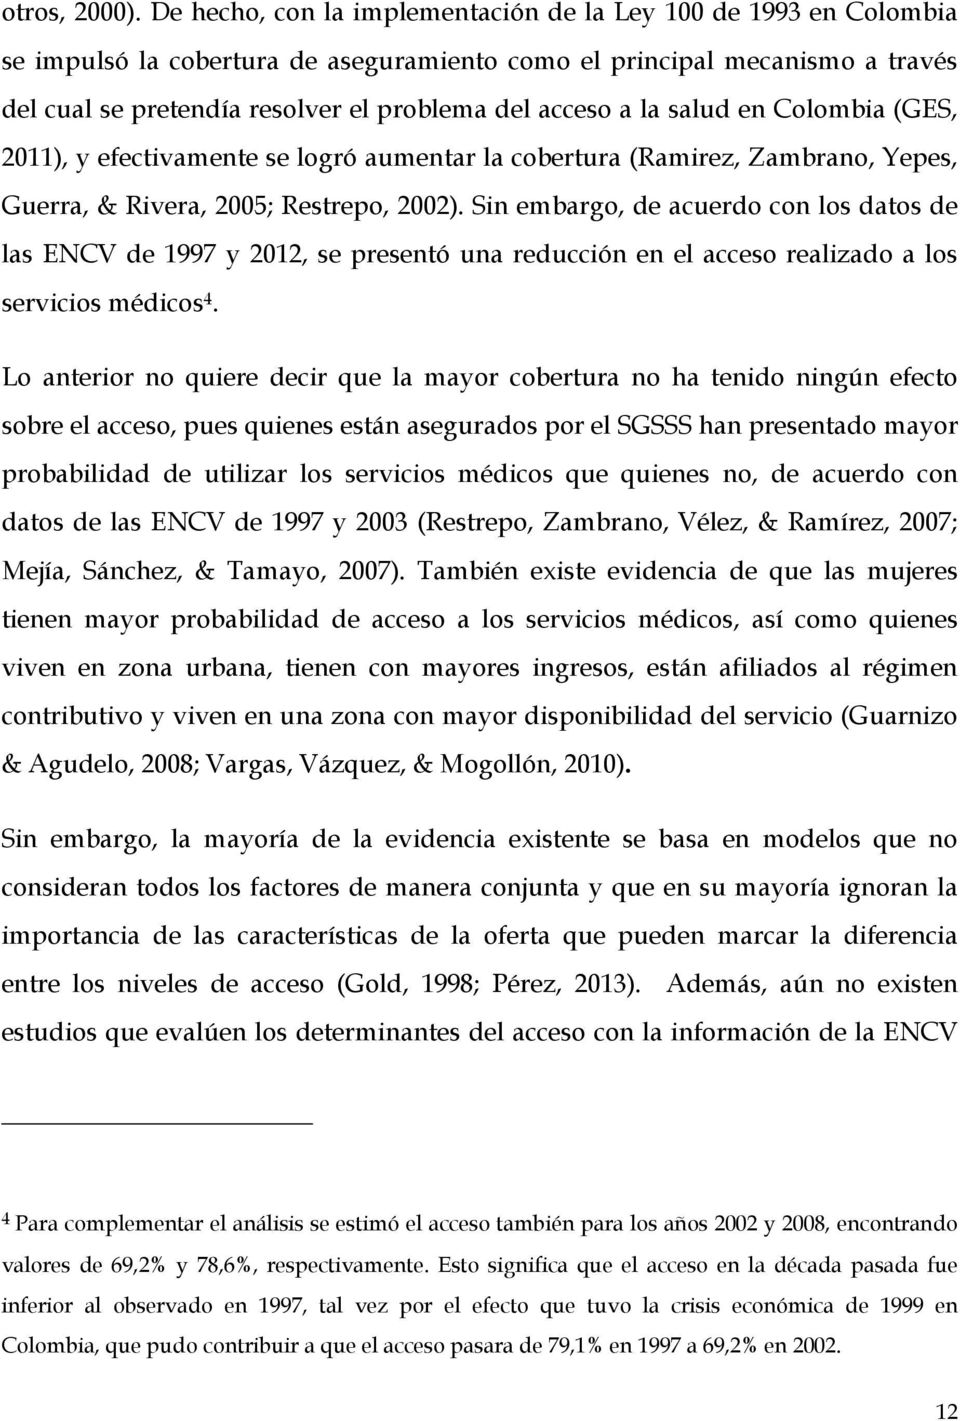 la salud en Colombia (GES, 2011), y efectivamente se logró aumentar la cobertura (Ramirez, Zambrano, Yepes, Guerra, & Rivera, 2005; Restrepo, 2002).